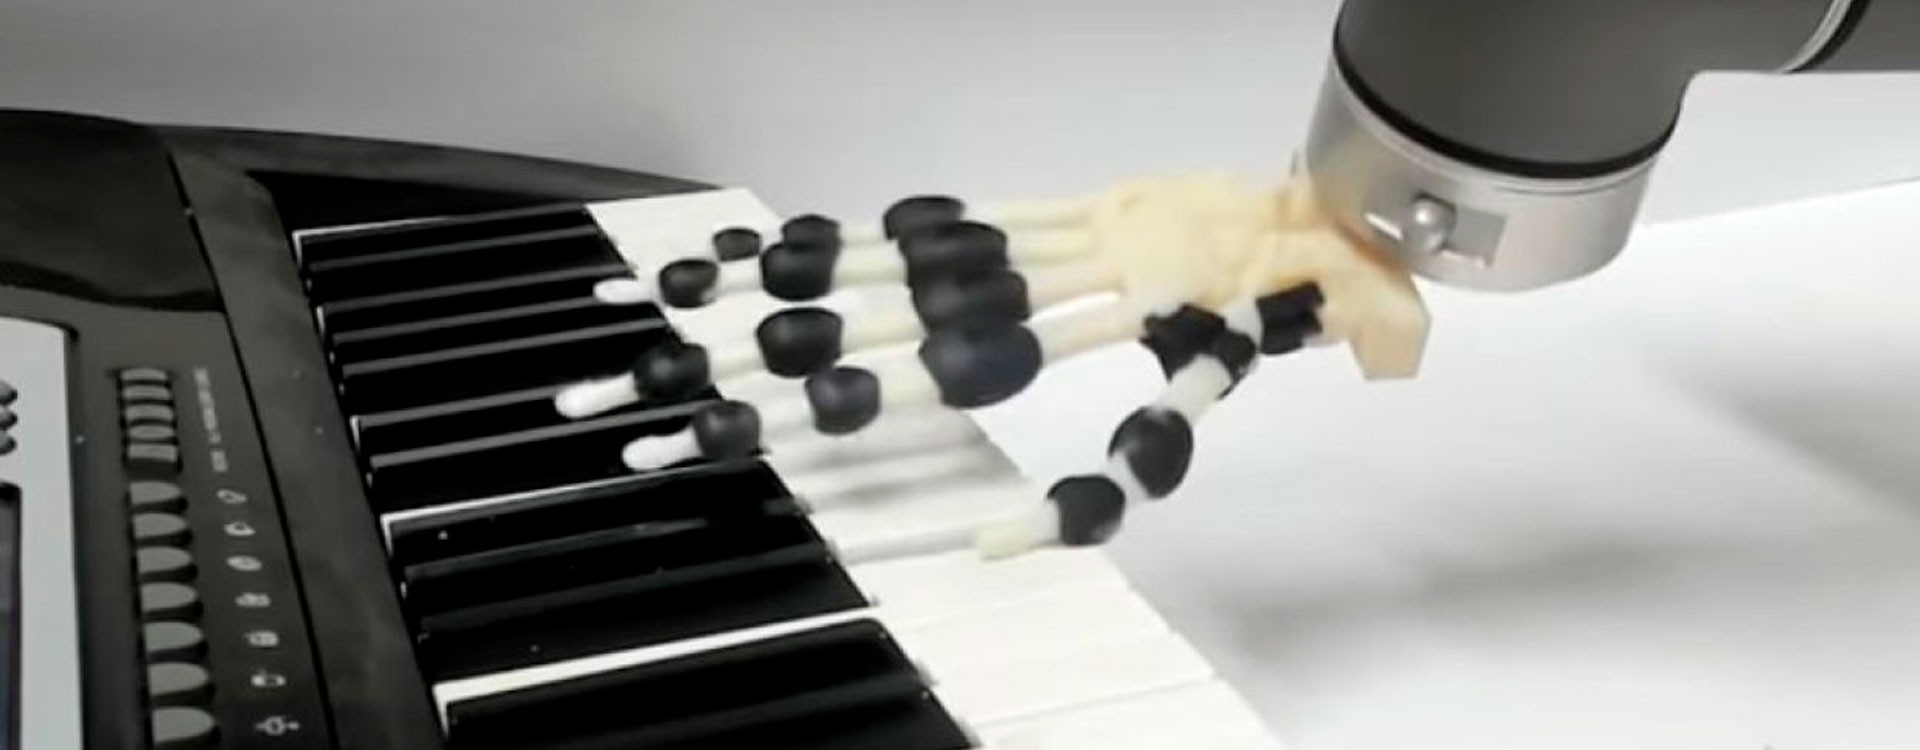 3D-напечатанная роботизированная рука играет праздничные мелодии на фортепиано